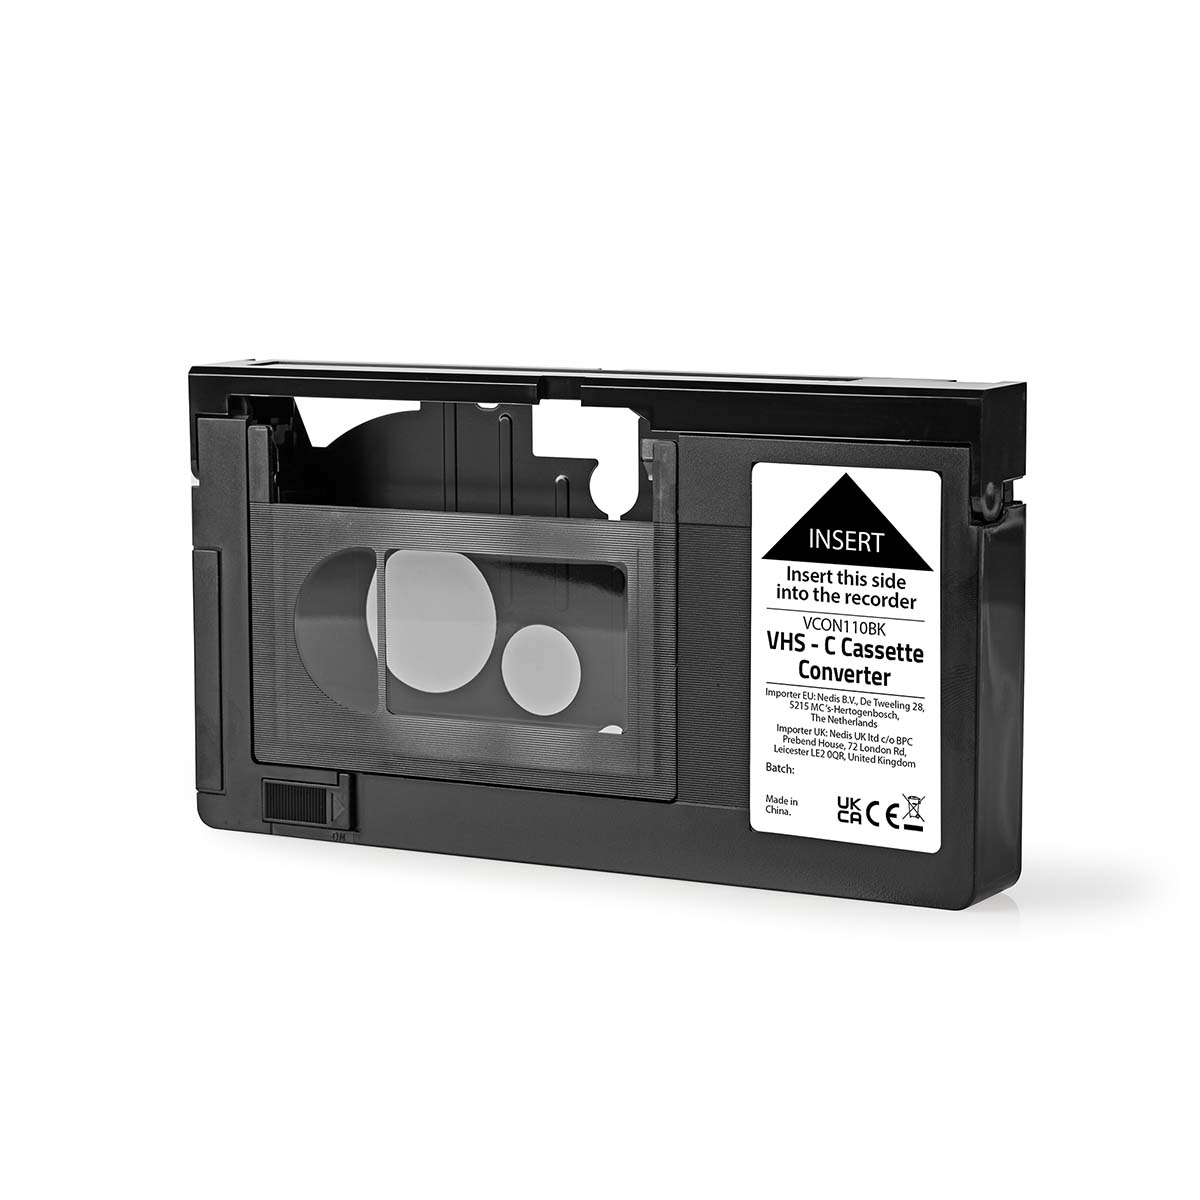 Digitaliser dine VHS-C kassetter selv